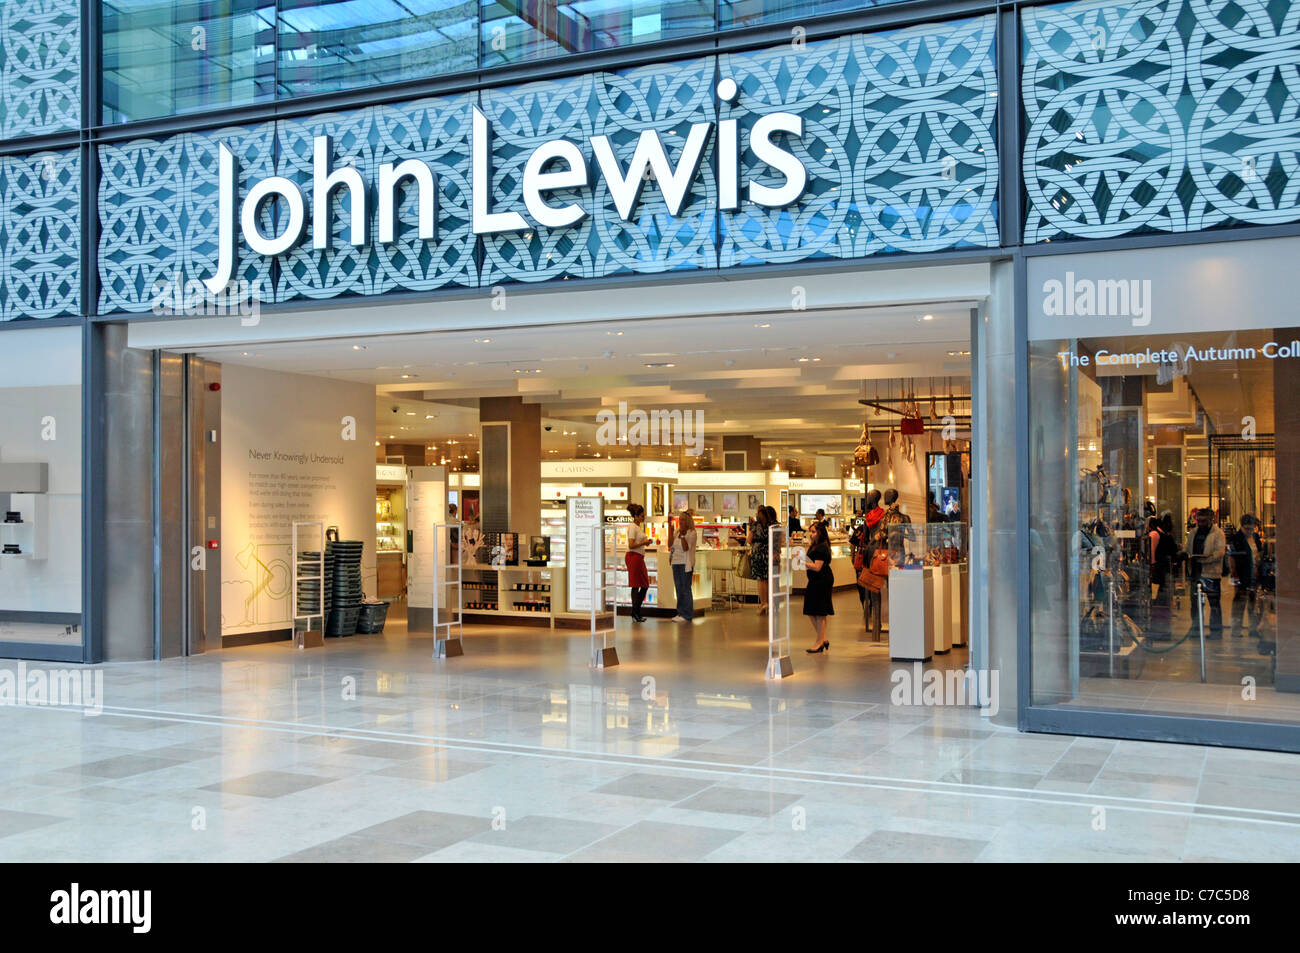 John Lewis Department Store Eingang & Innenraum gesehen von Shopping Mall in Stratford City Einkaufszentrum Westfield Newham East London England Großbritannien Stockfoto